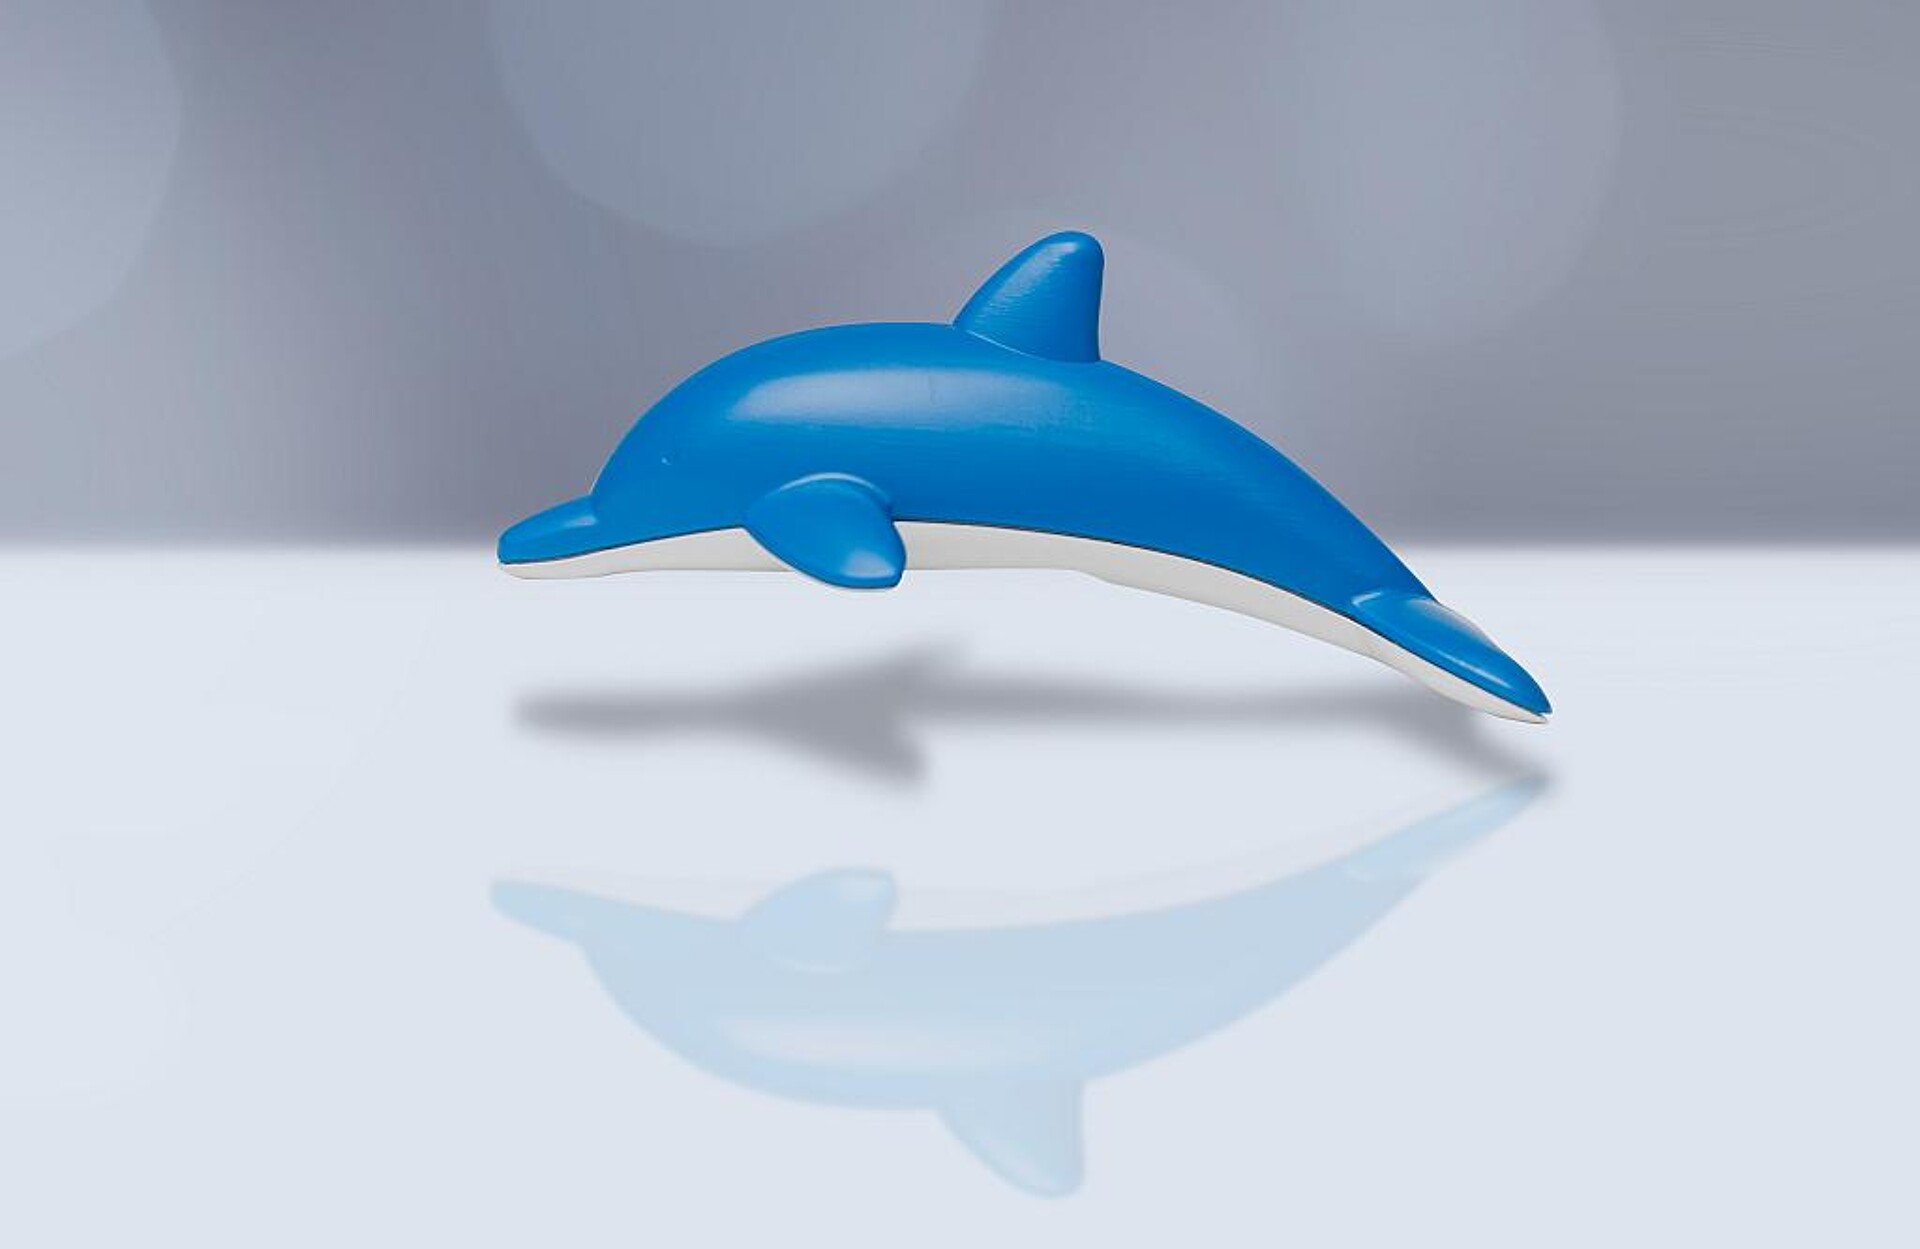 Im Mittelpunkt des Projektes stand der ultraschallverschweißte Delfin, der als Give-away vorgesehen war. (Foto: Barlog Plastics)